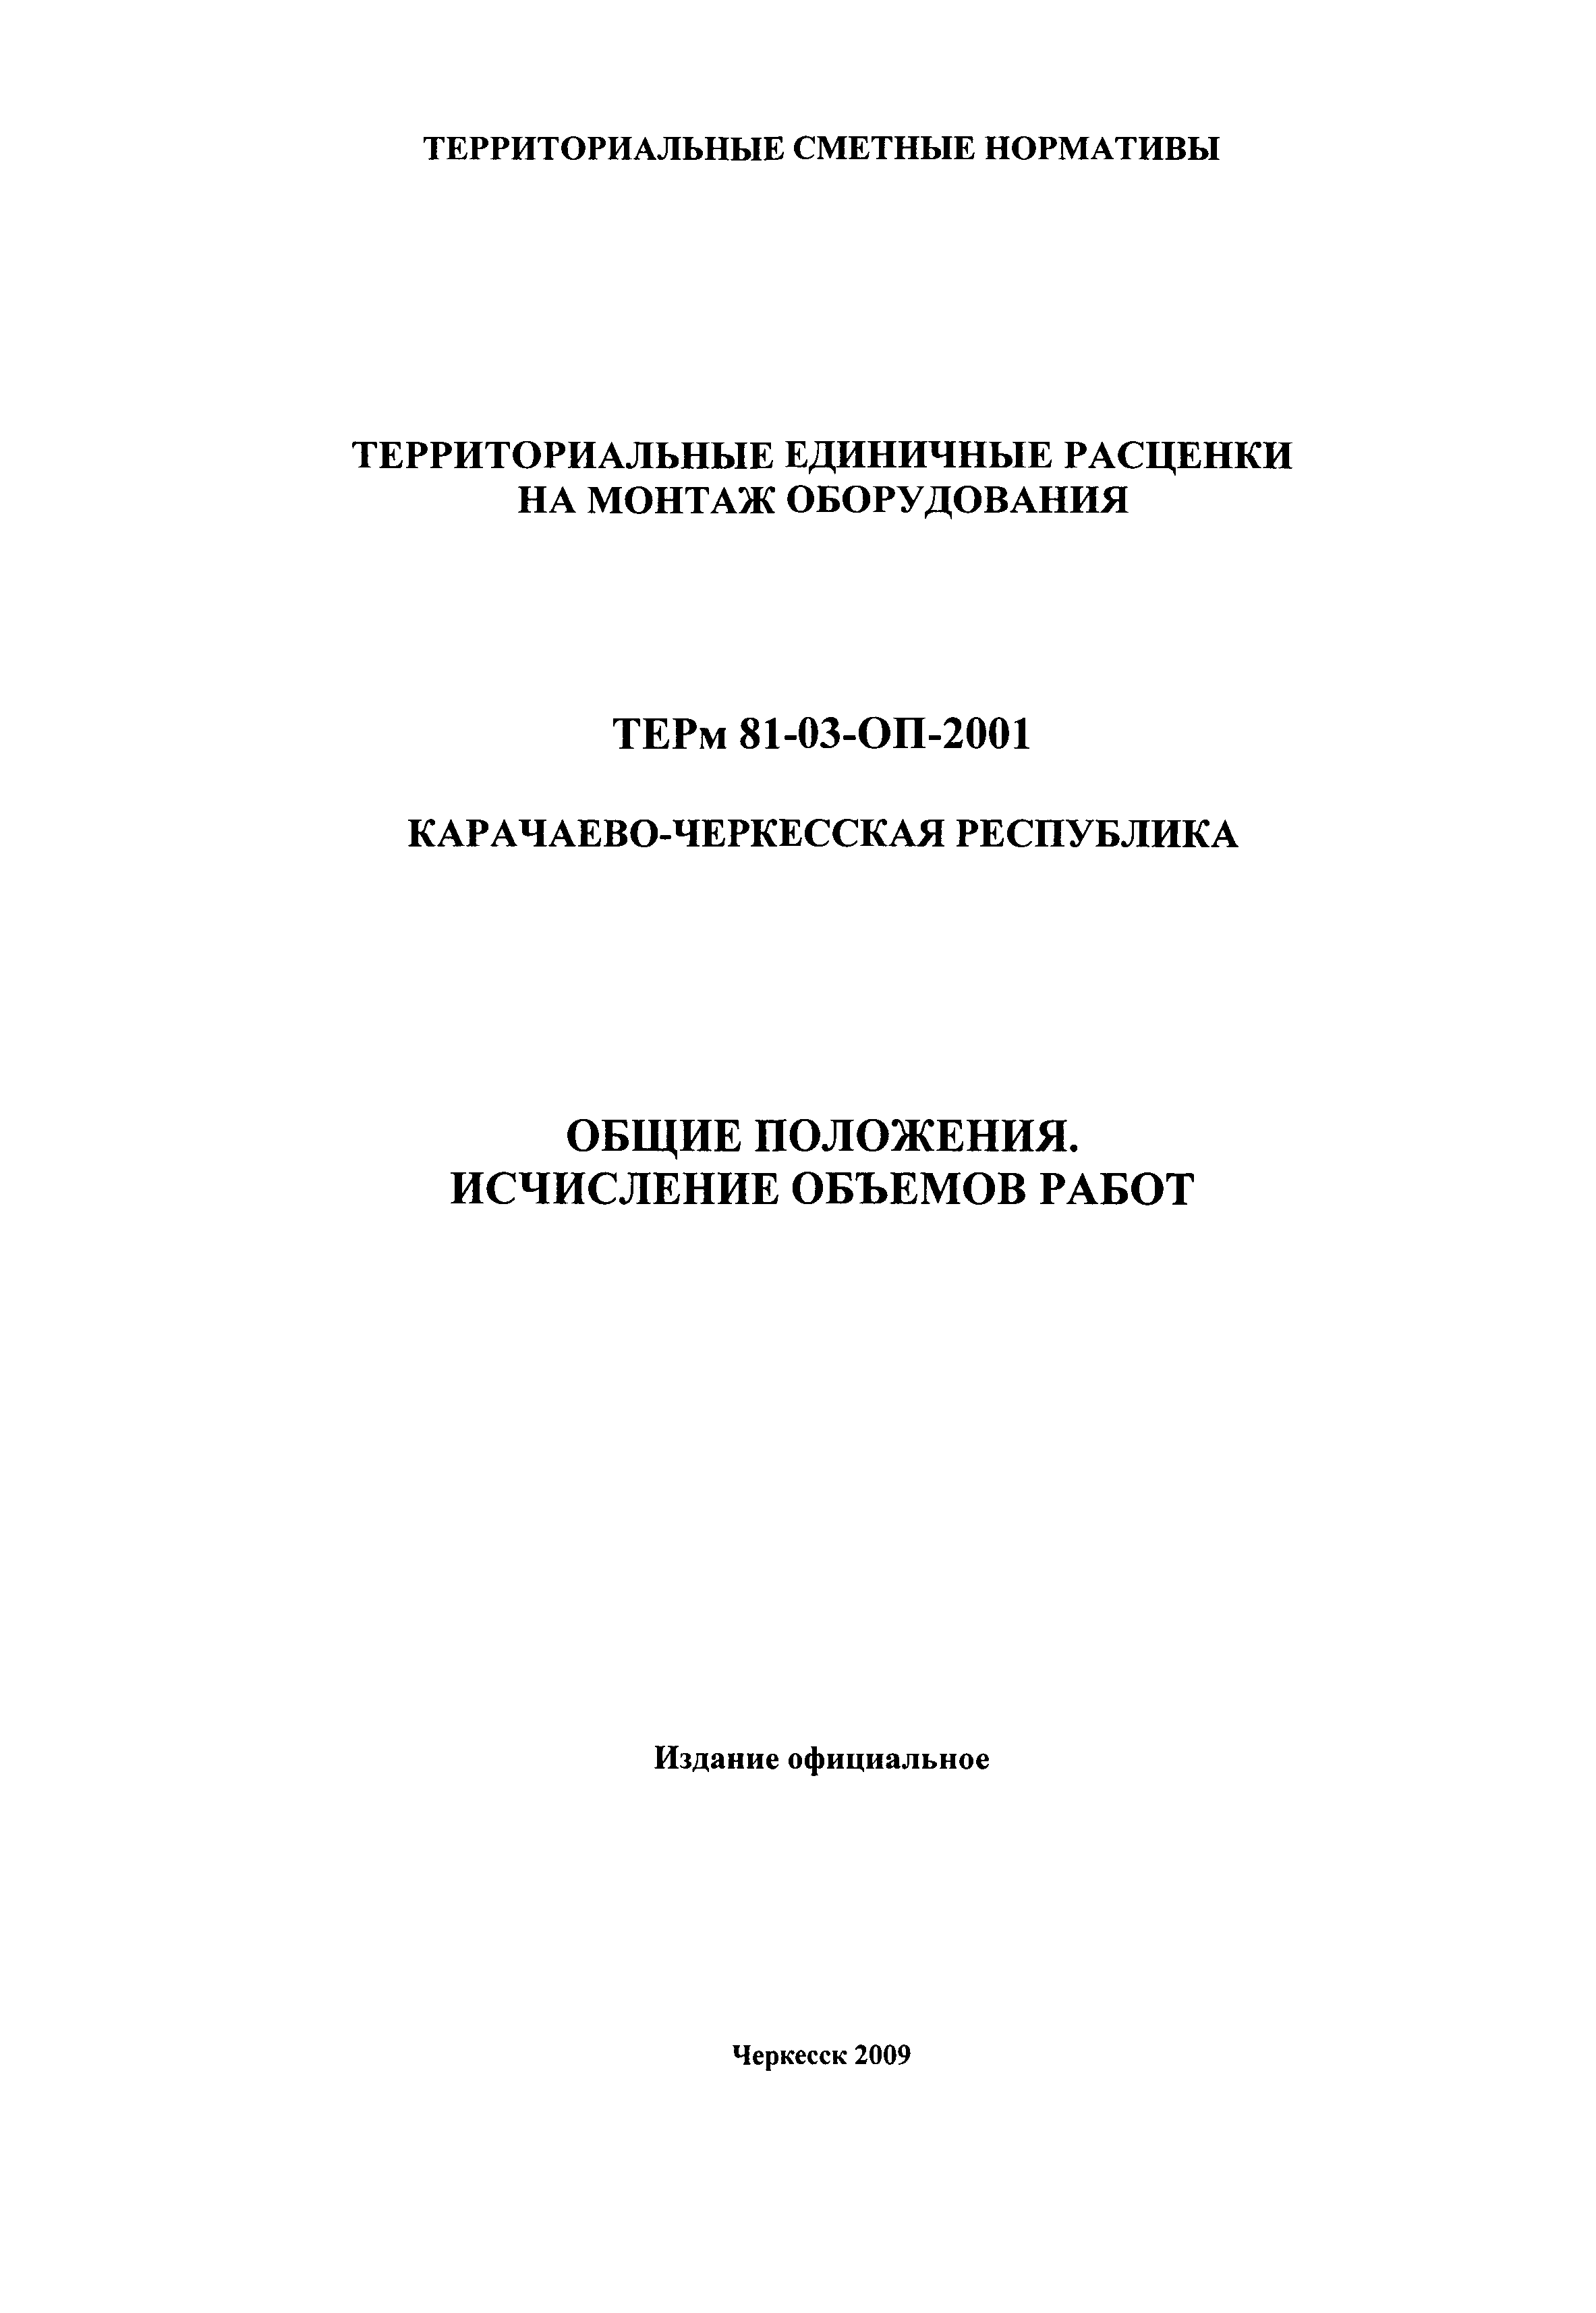 ТЕРм Карачаево-Черкесская Республика 2001-ОП